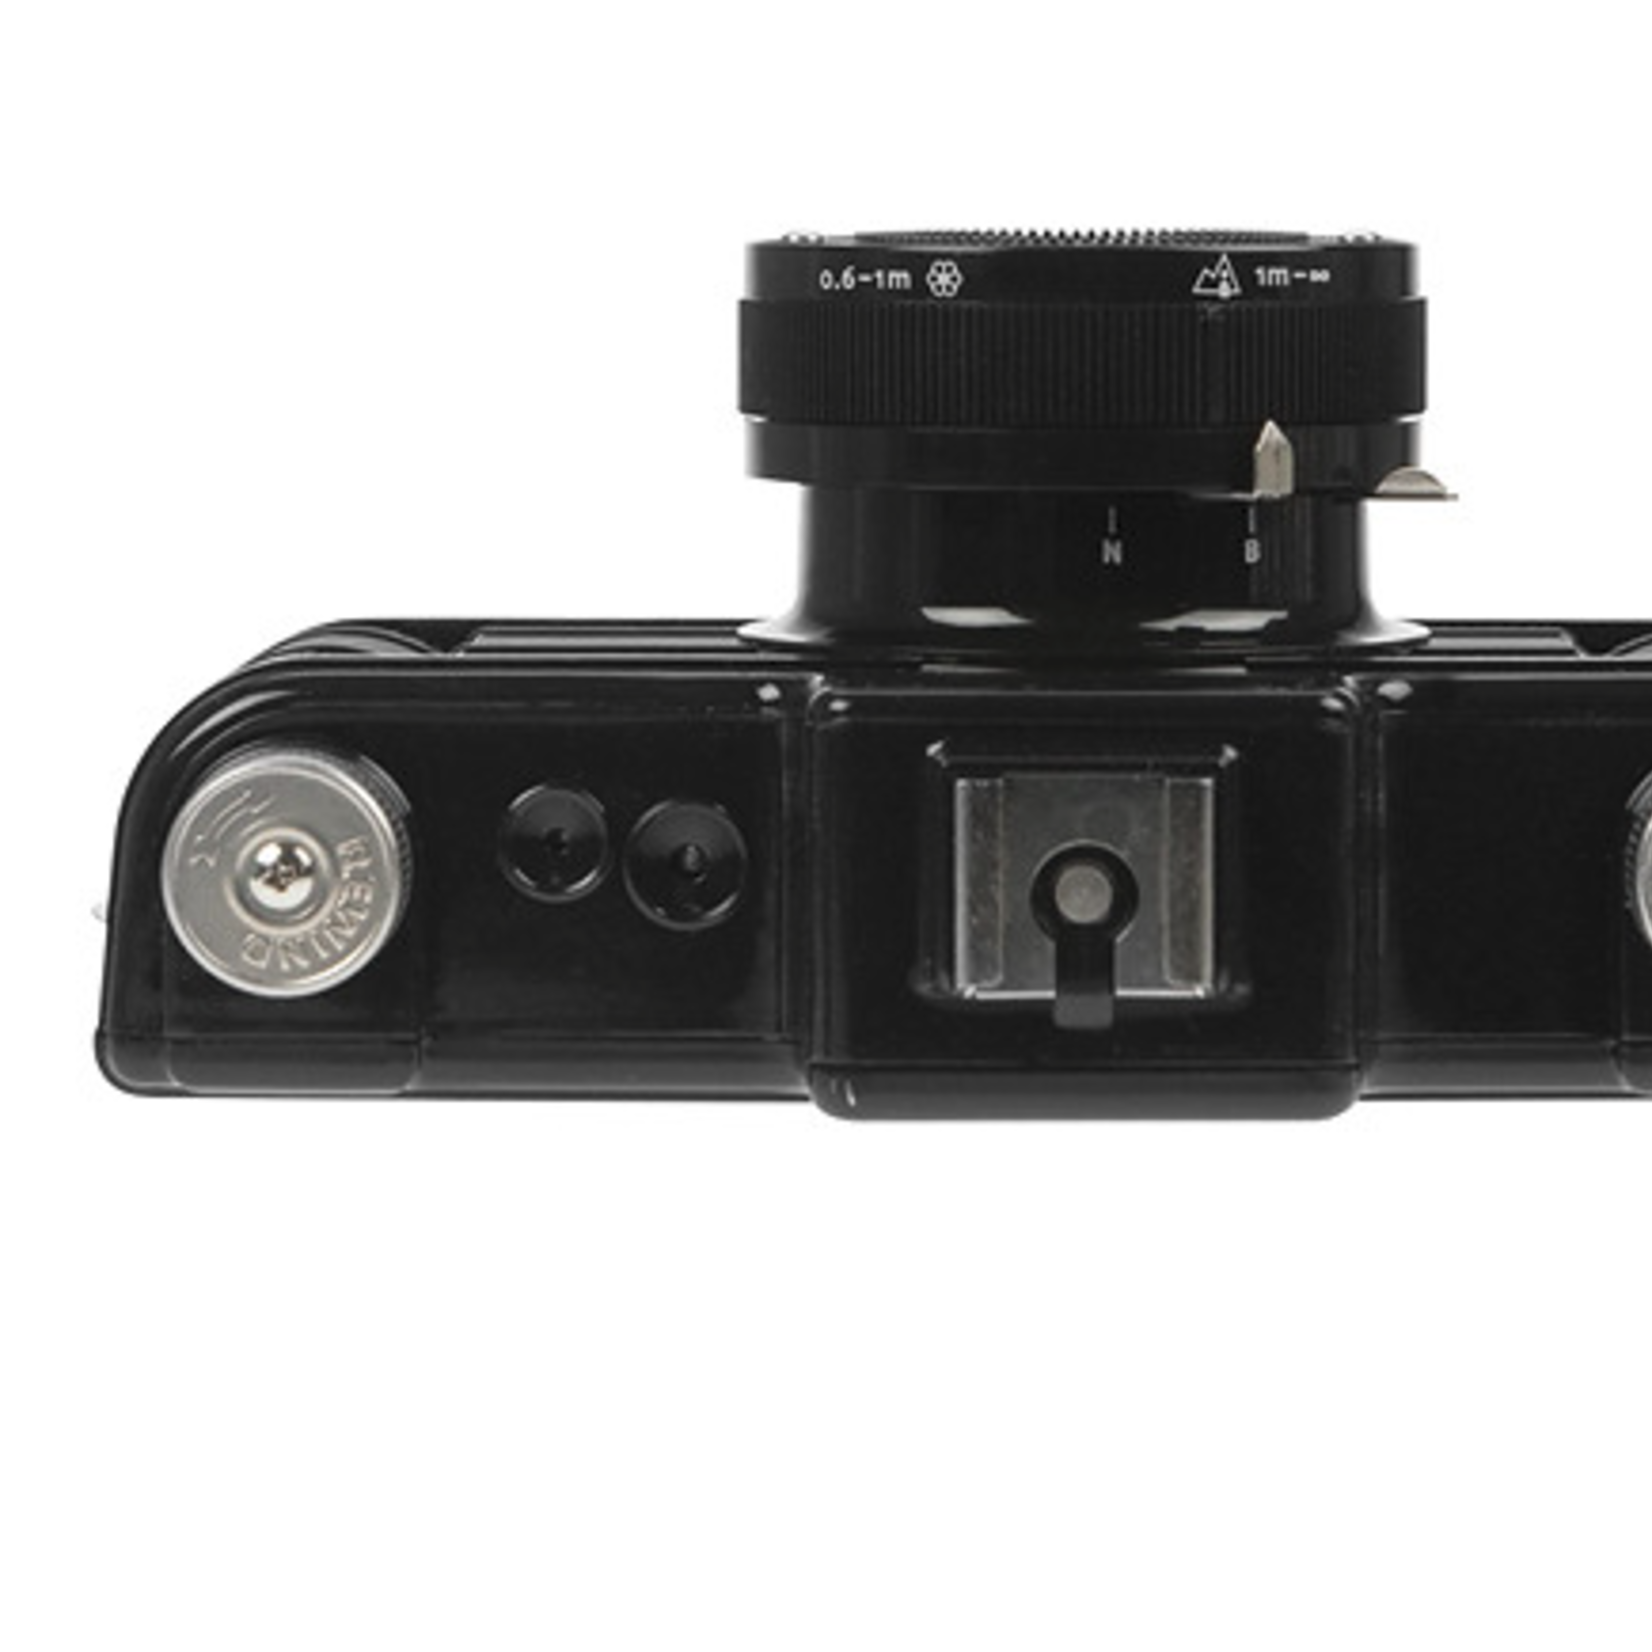 Lomography Lomography Sprocket Rocket 35mm Film Camera (Black)